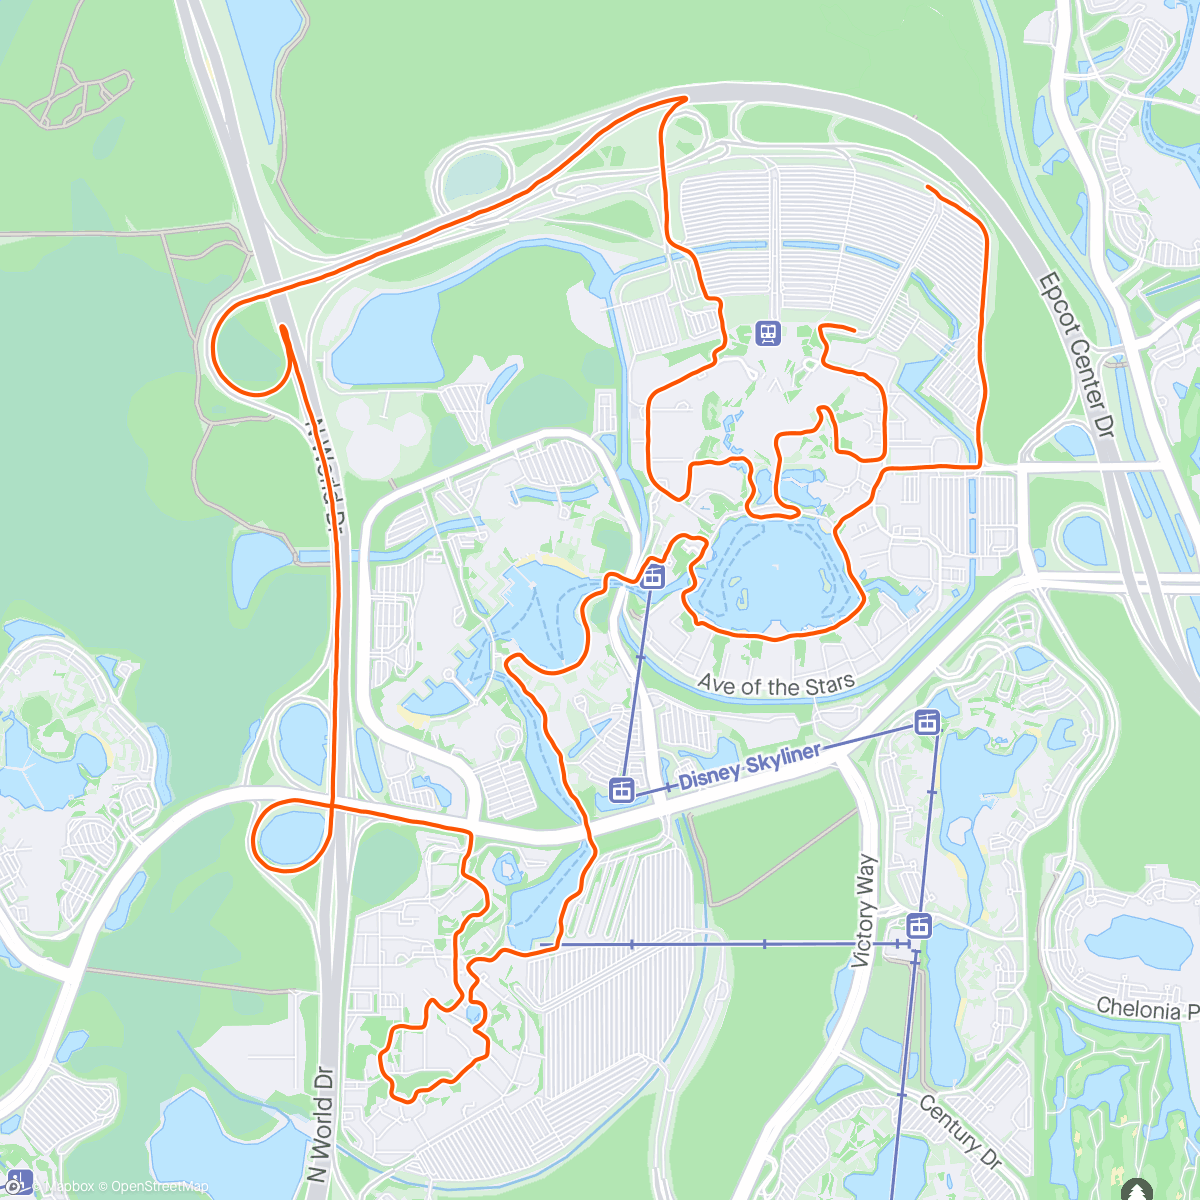 「Disney 10 Miler」活動的地圖